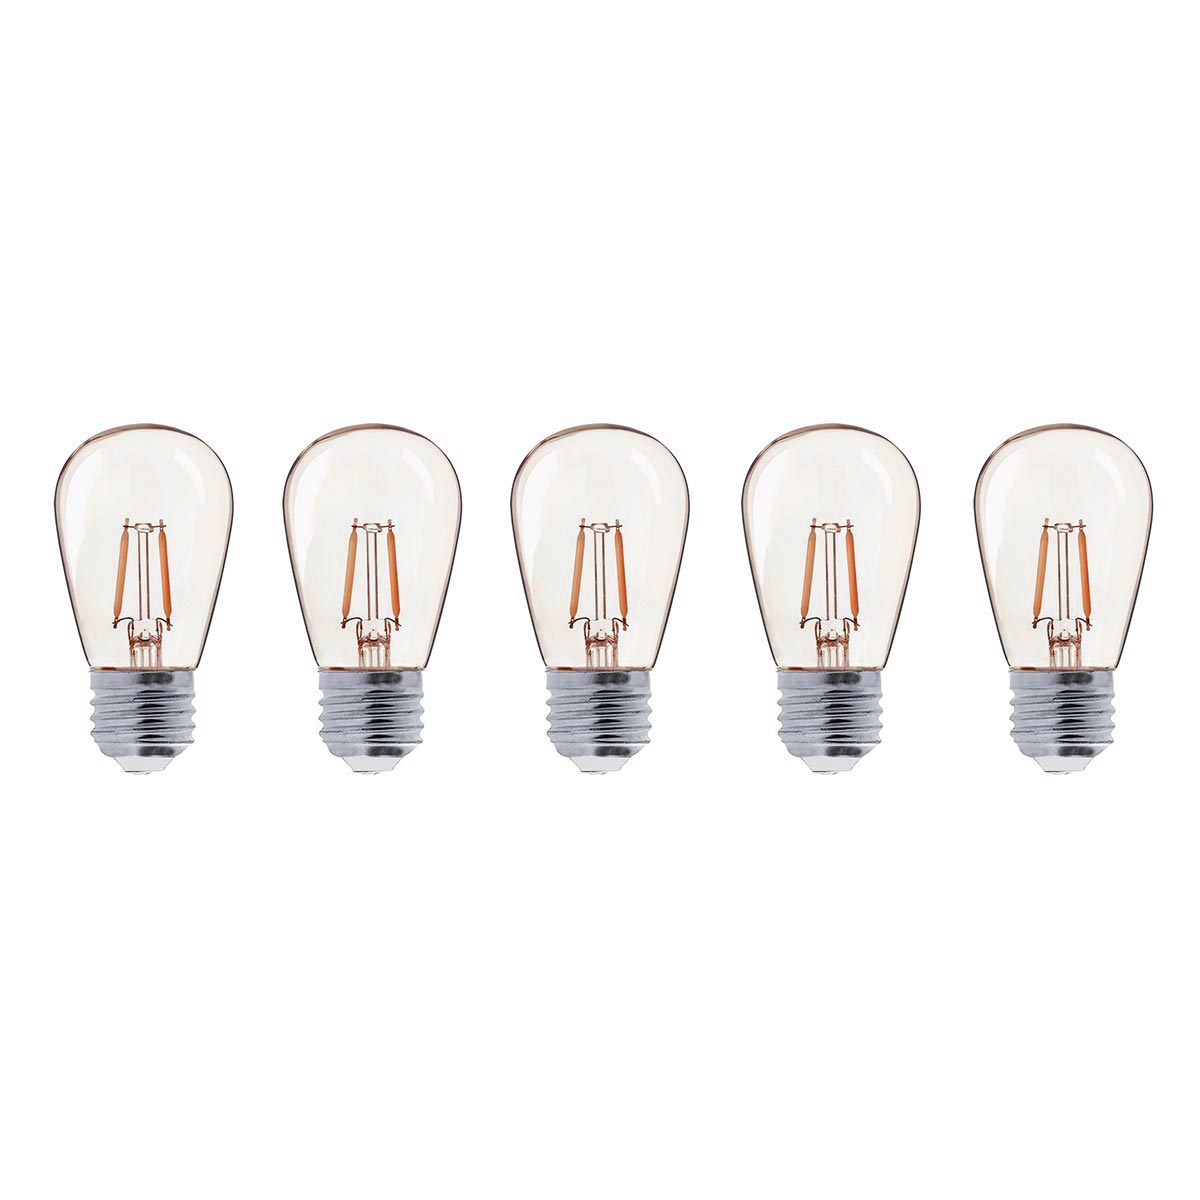 Lot de 5 ampoules LED E27 blanc chaud filament vintage compatible